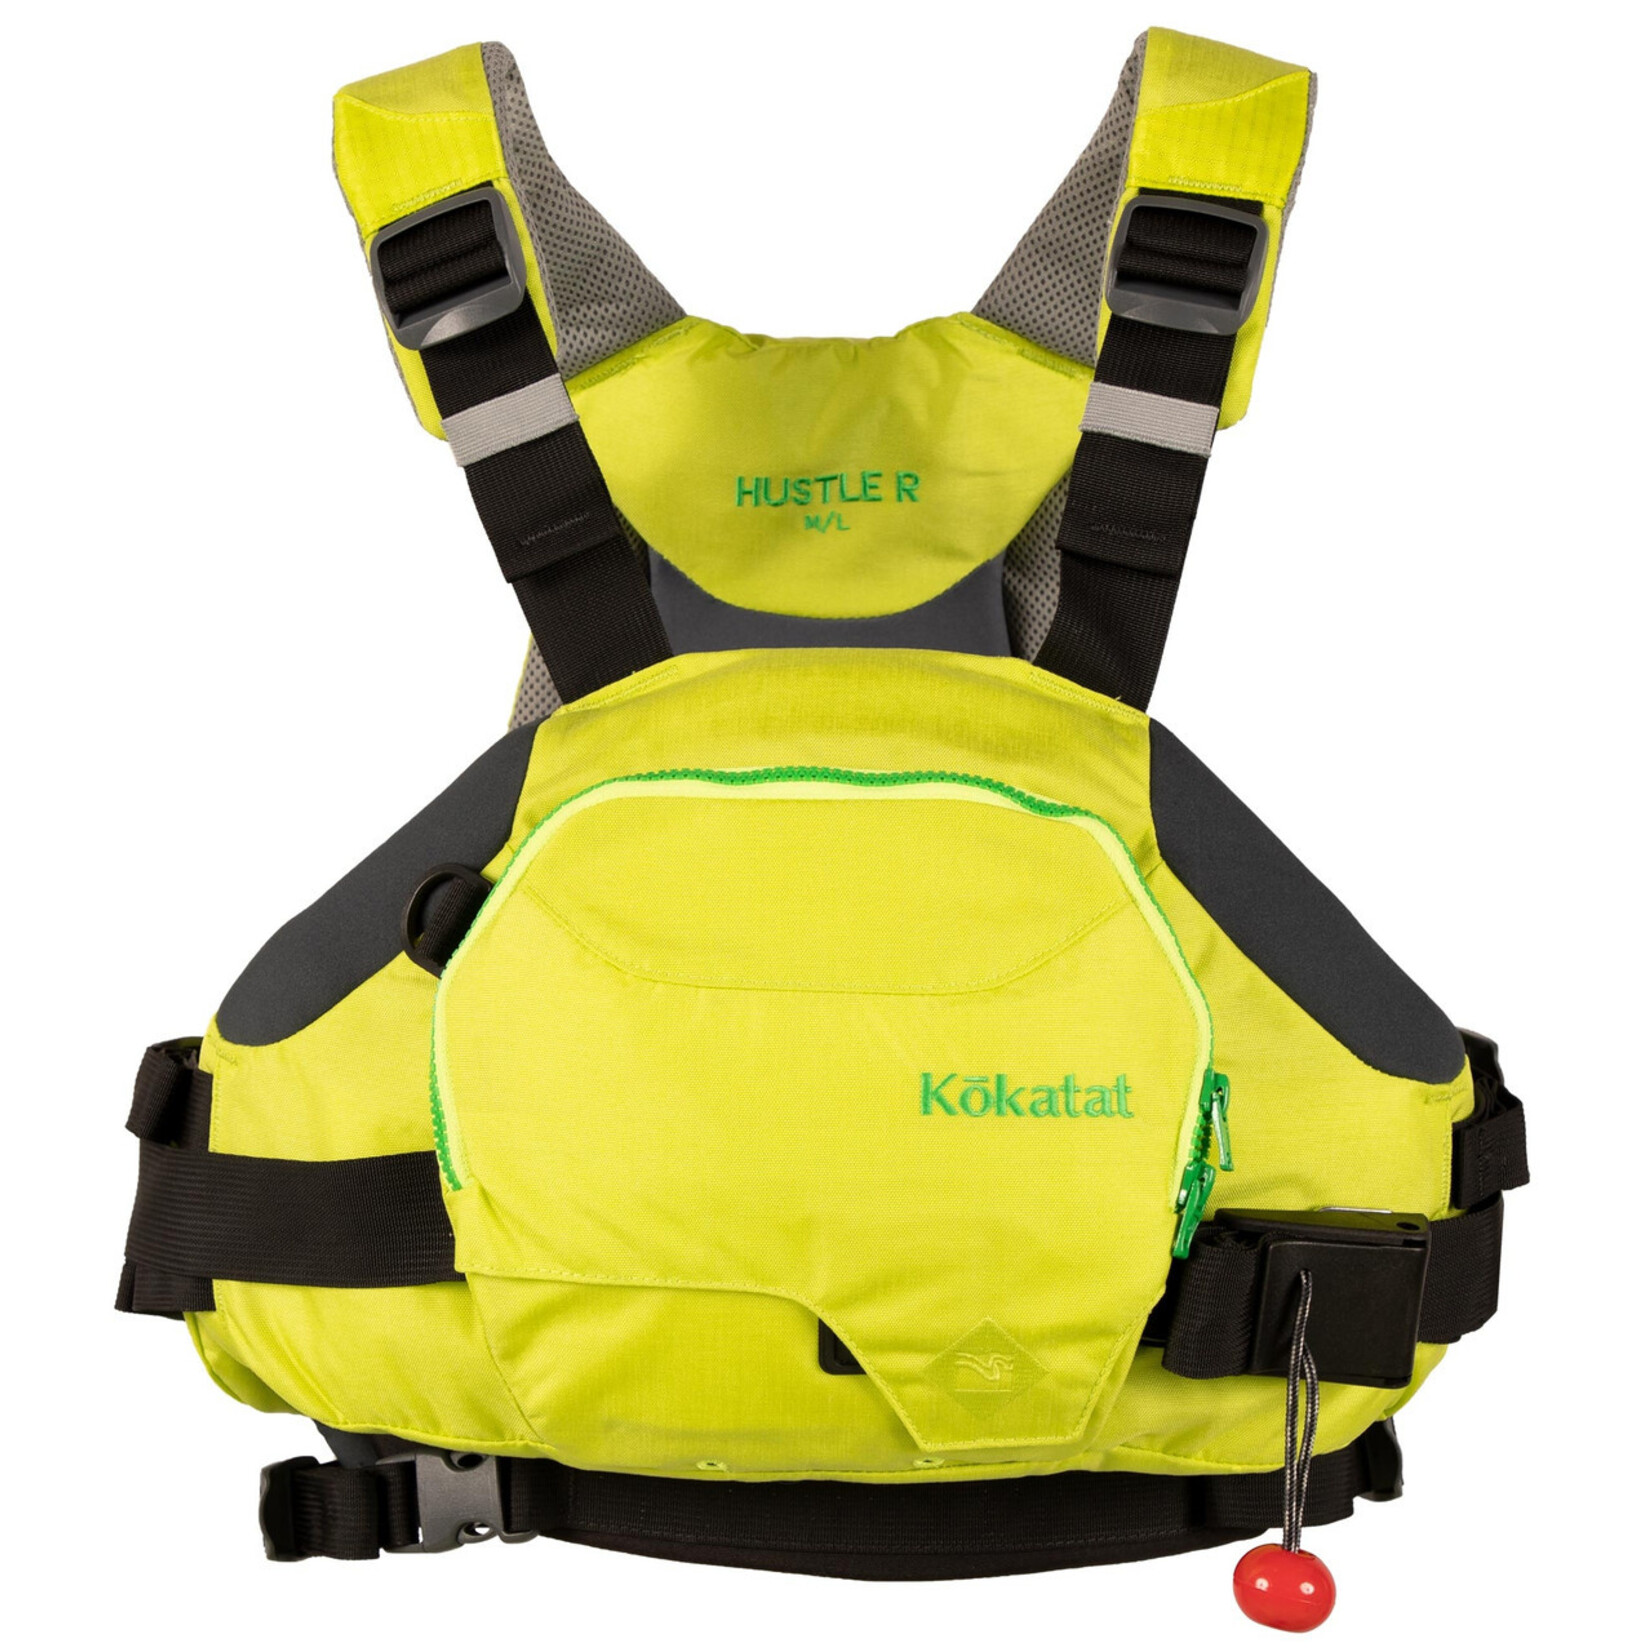 Kokatat - HustleR Rescue Vest